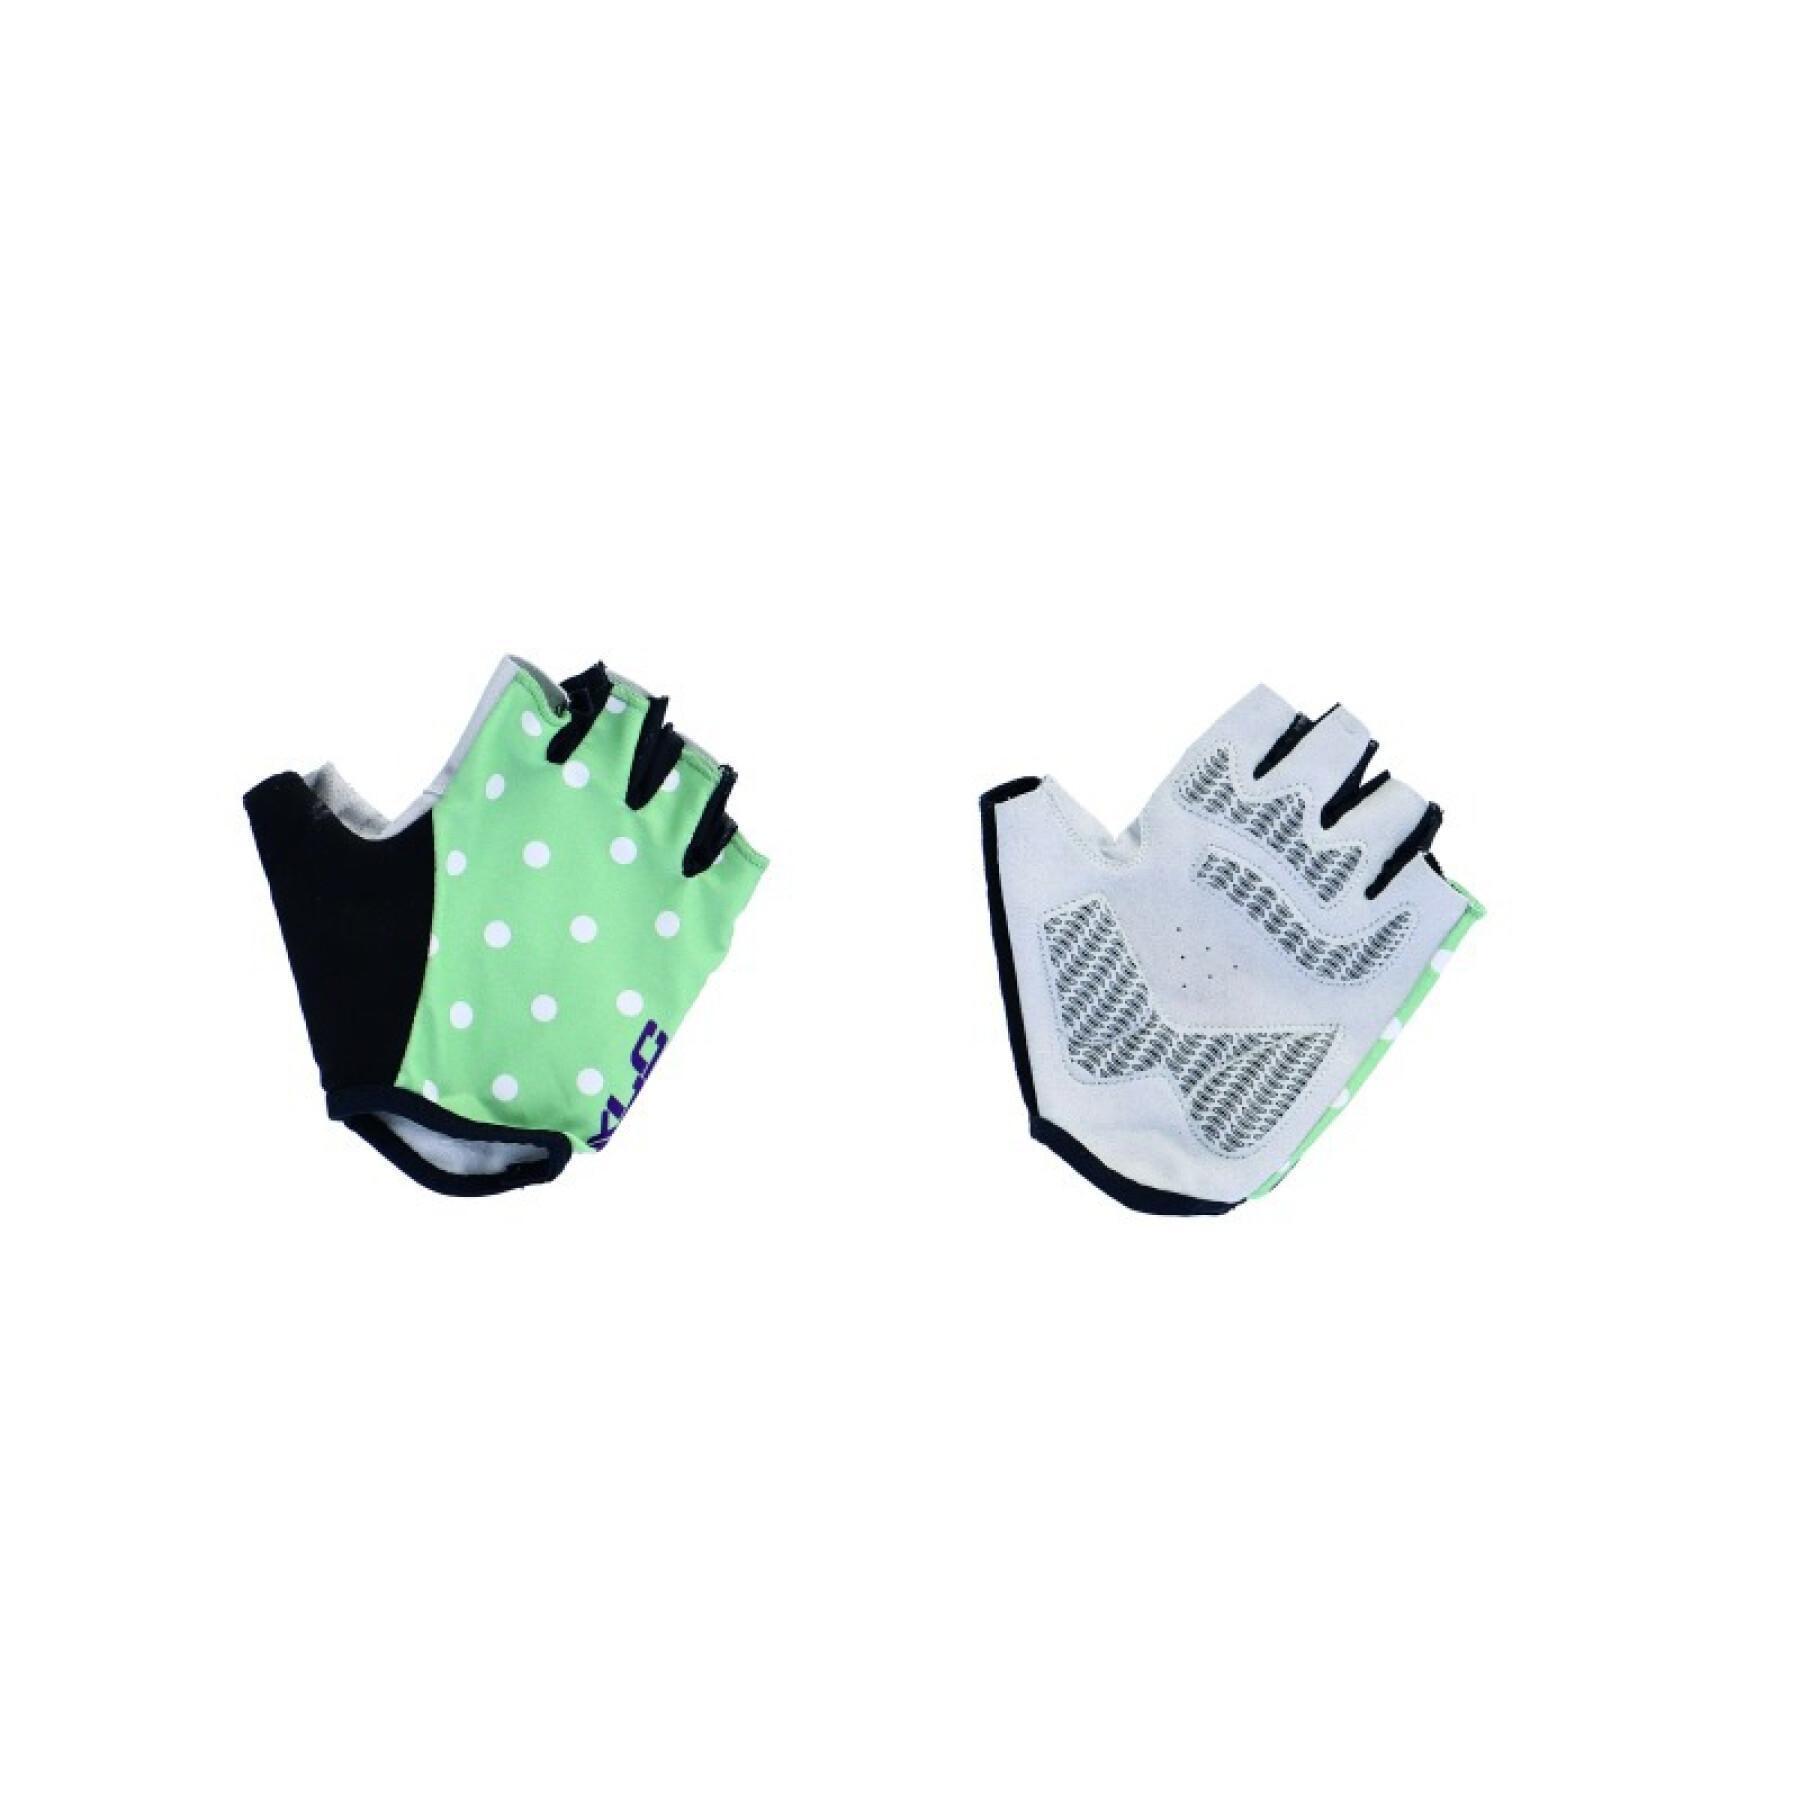 Kurze Handschuhe mit Tupfen XLC cg-s10